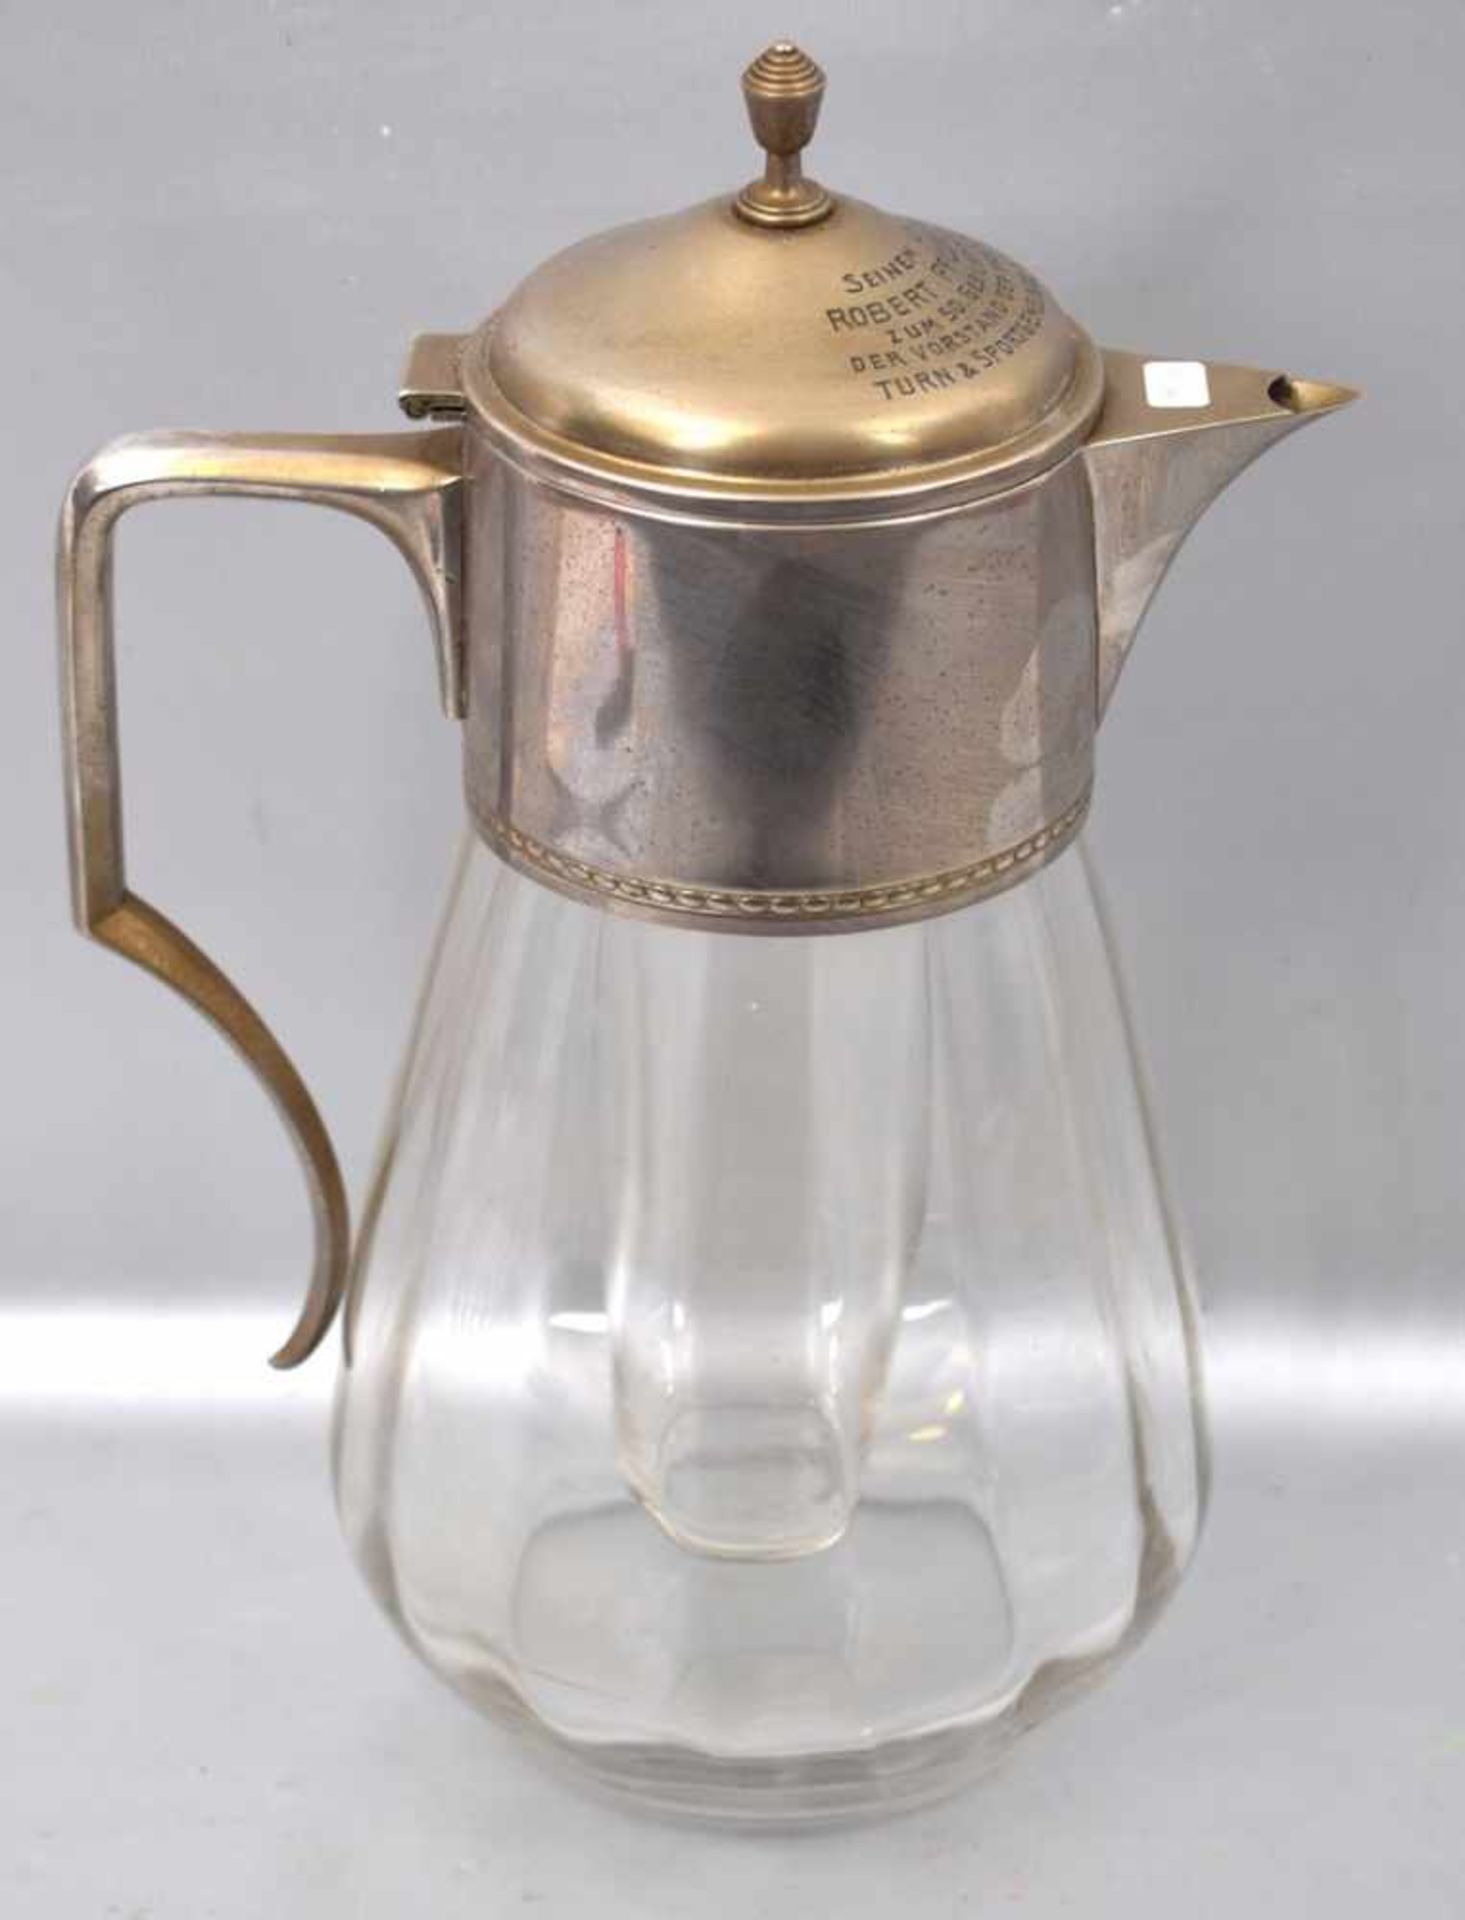 Kalte Entefarbl. Glas, Griff und Ausgießer Metall, Deckel mit Widmung, H 32 cm, um 1900